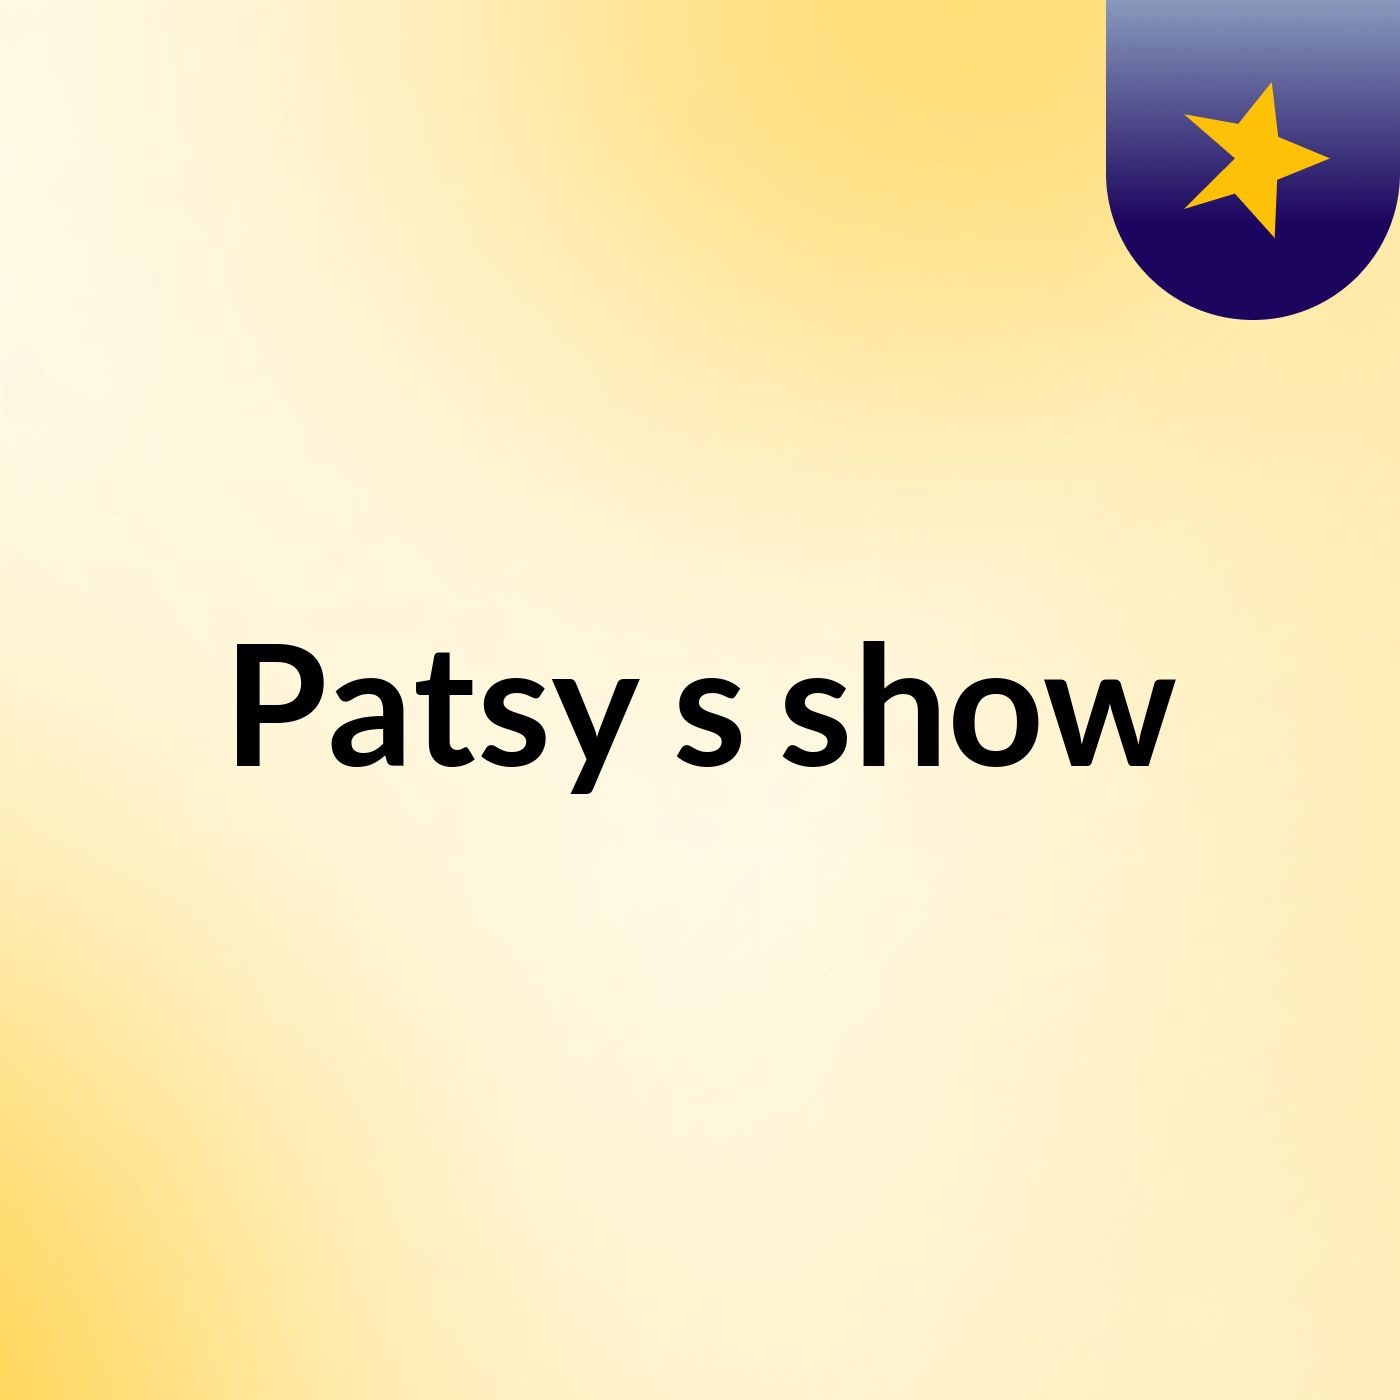 Patsy's show